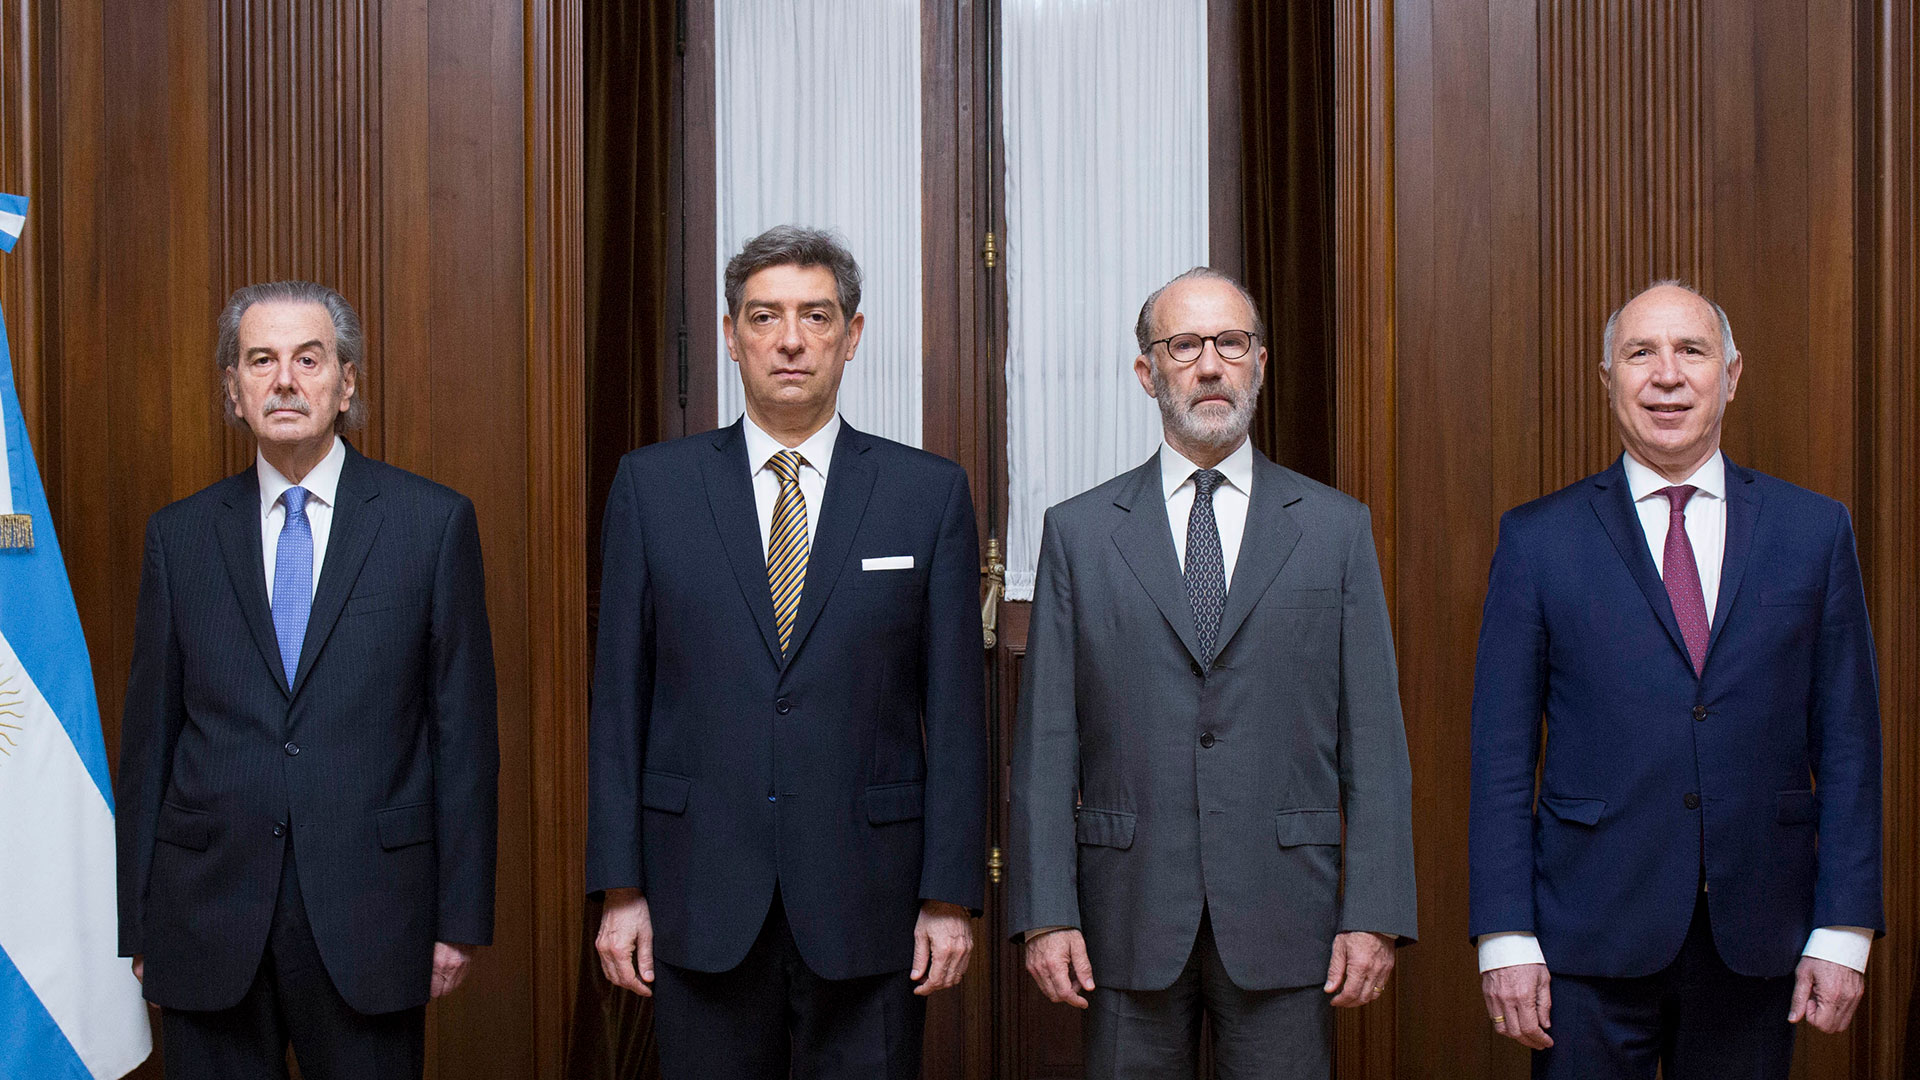 Juan Carlos Maqueda, Horacio Rosatti, Carlos Rosenkrantz y Ricardo Lorenzetti. Los cuatro jueces de la Corte Suprema